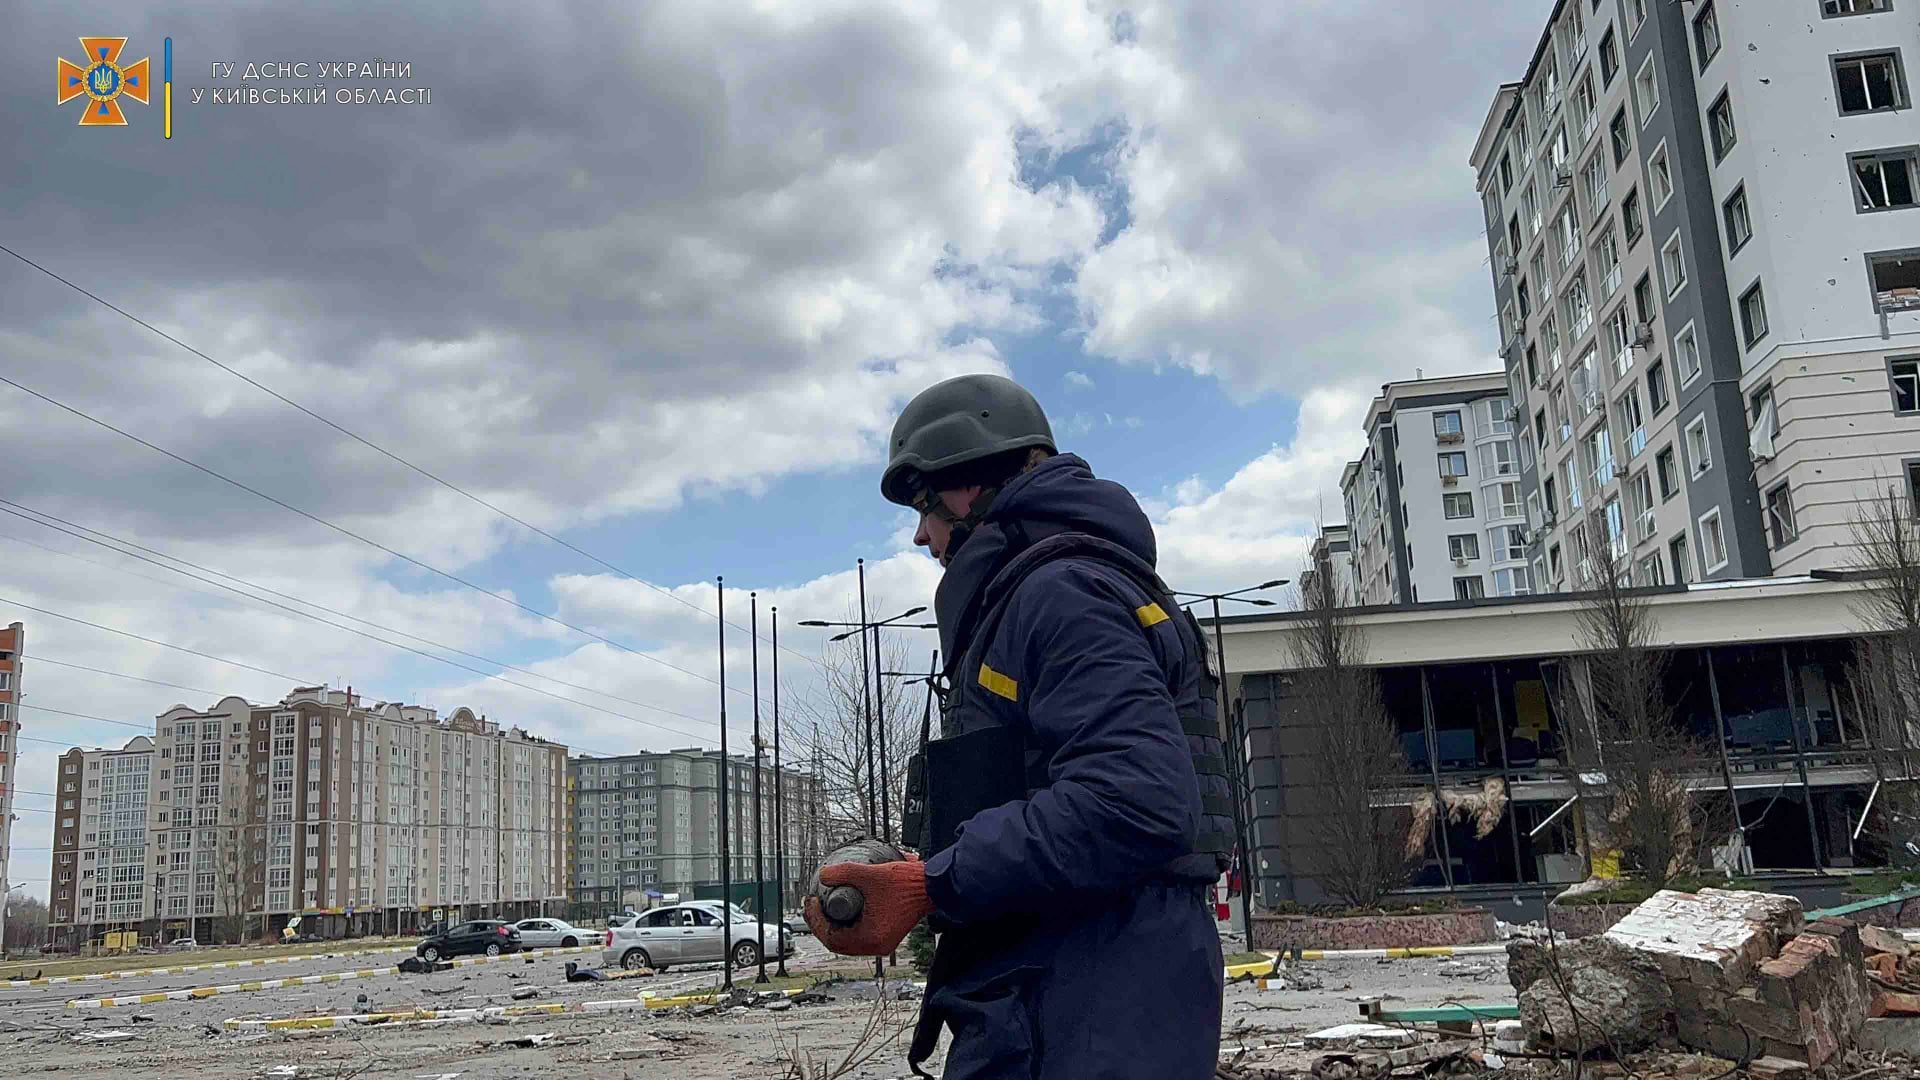 Мешканці столиці можуть чути звуки вибухів - це під Києвом працюють піротехніки